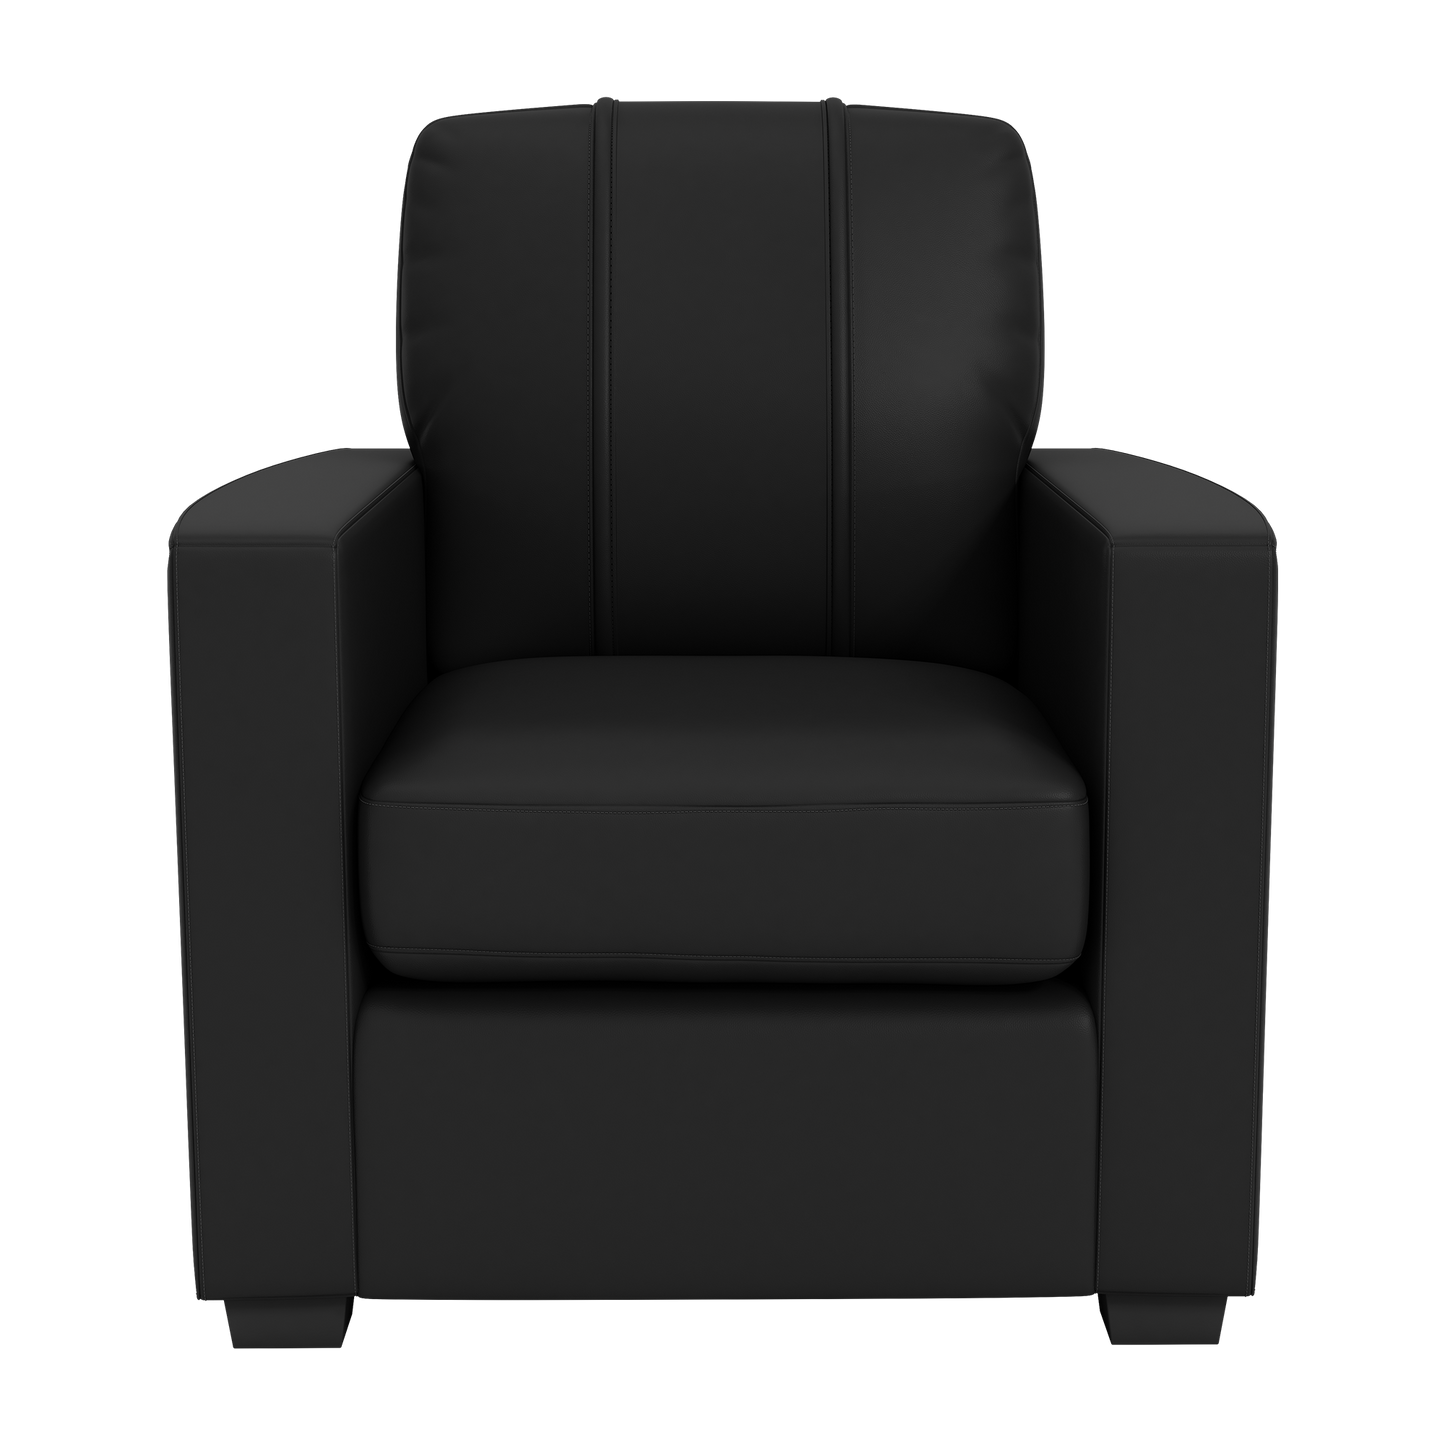 Silver Club Chair with Western Michigan Broncos Logo